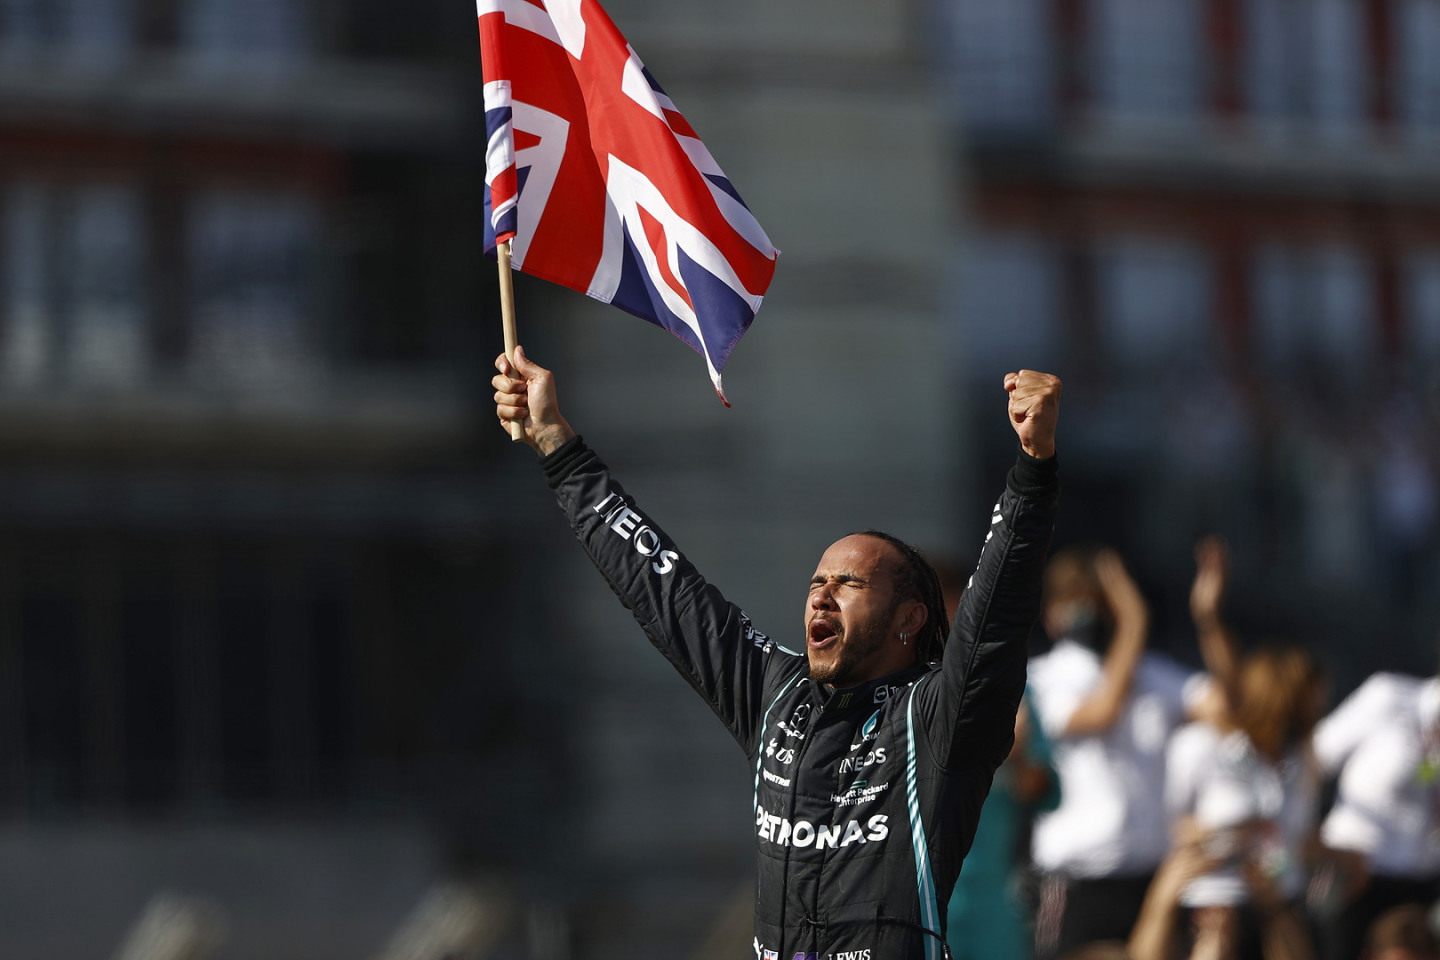 Льюис Хэмилтон – победитель Гран При Великобритании © Mercedes AMG F1 / LAT Images